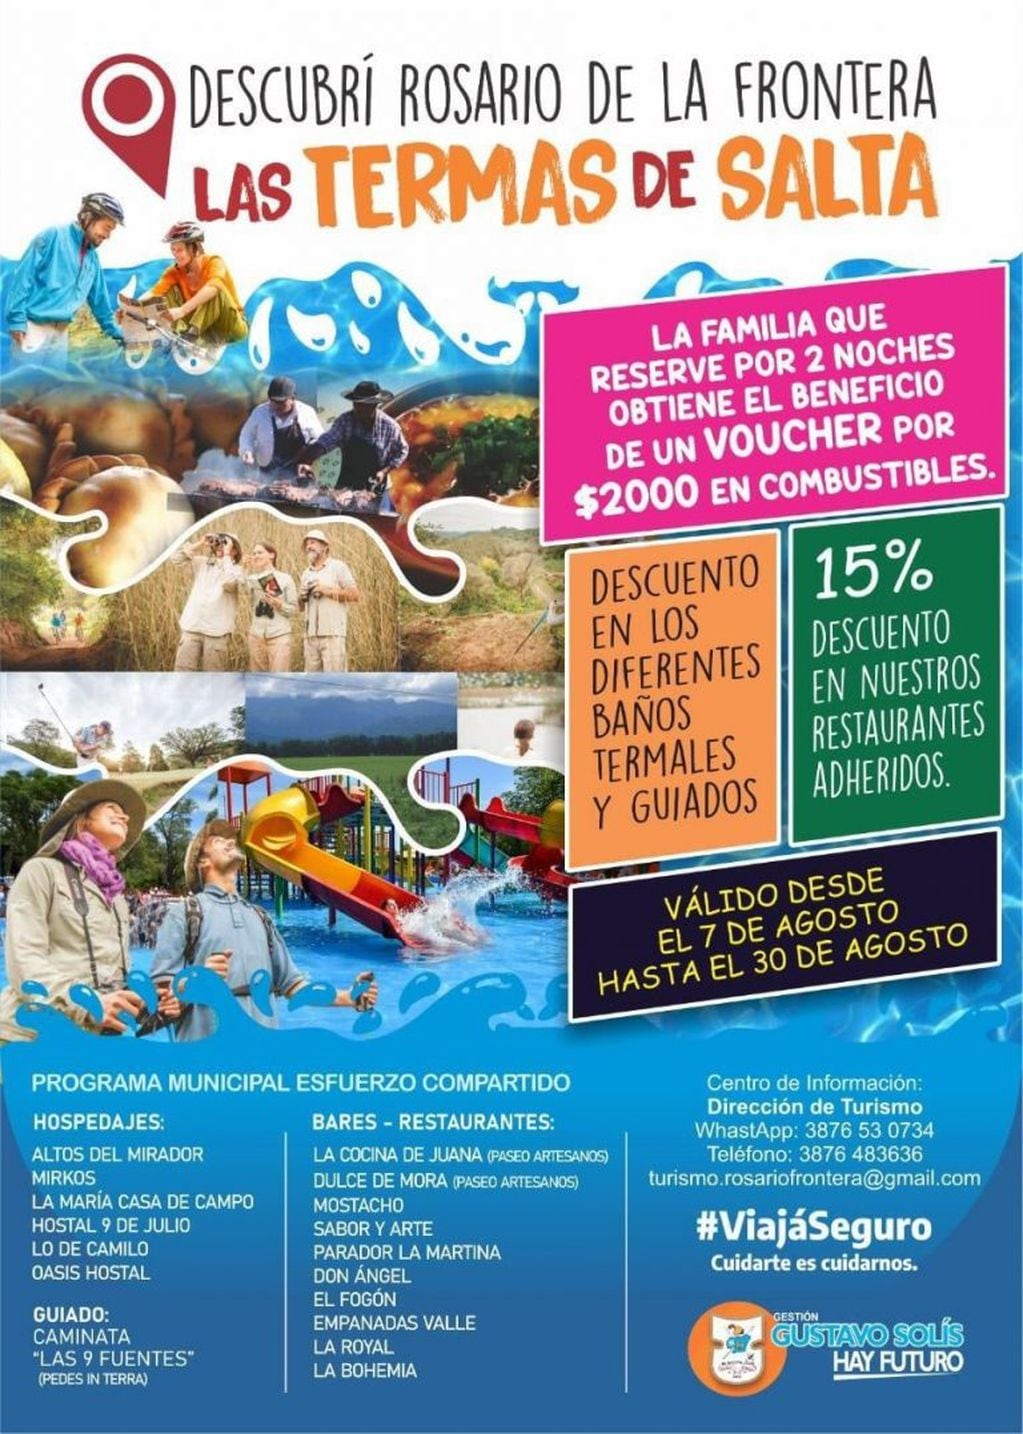 Rosario de la Frontera ofrece descuentos para los turistas (Facebook Rosario de la Frontera)